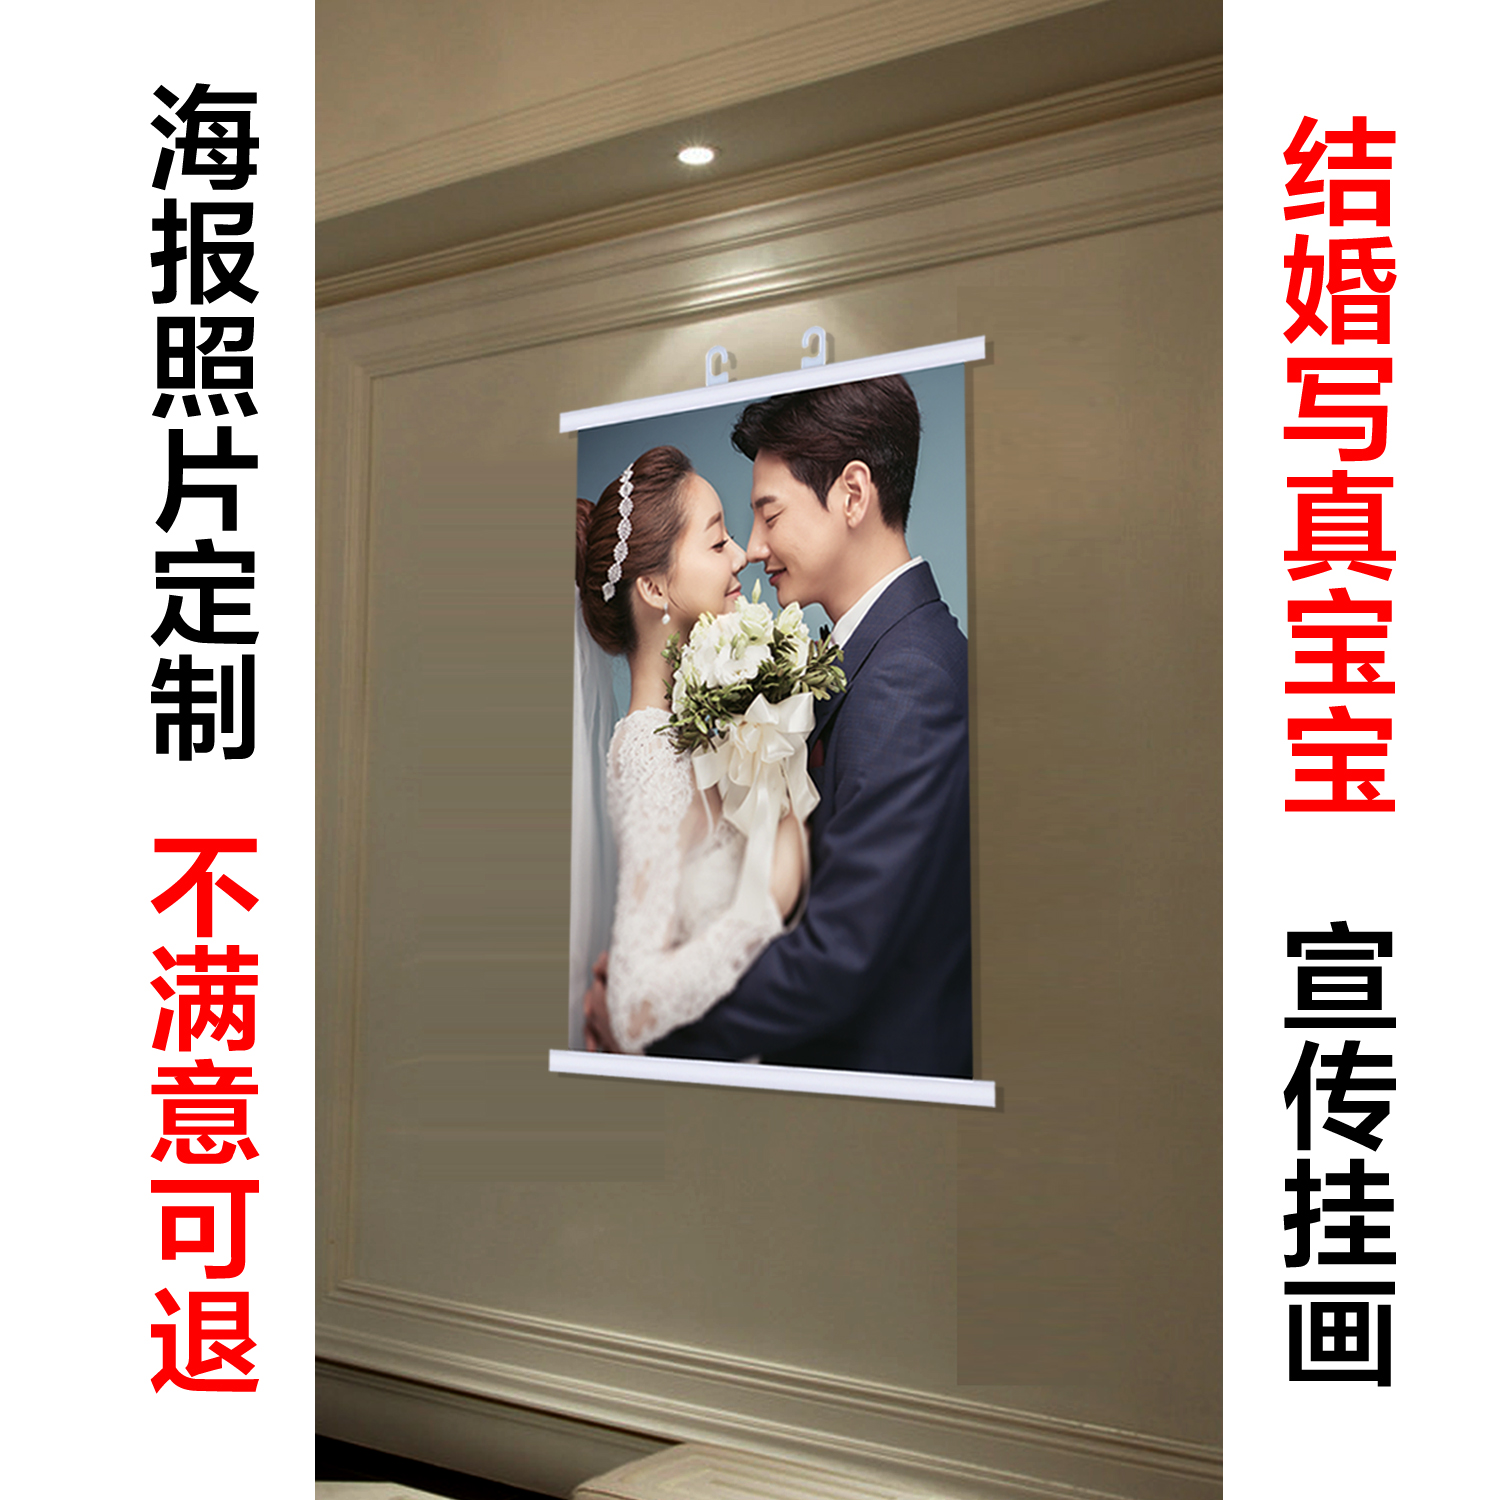 结婚宝宝生日生活照片写真喷绘挂画广告油画布定制打印制作做出图